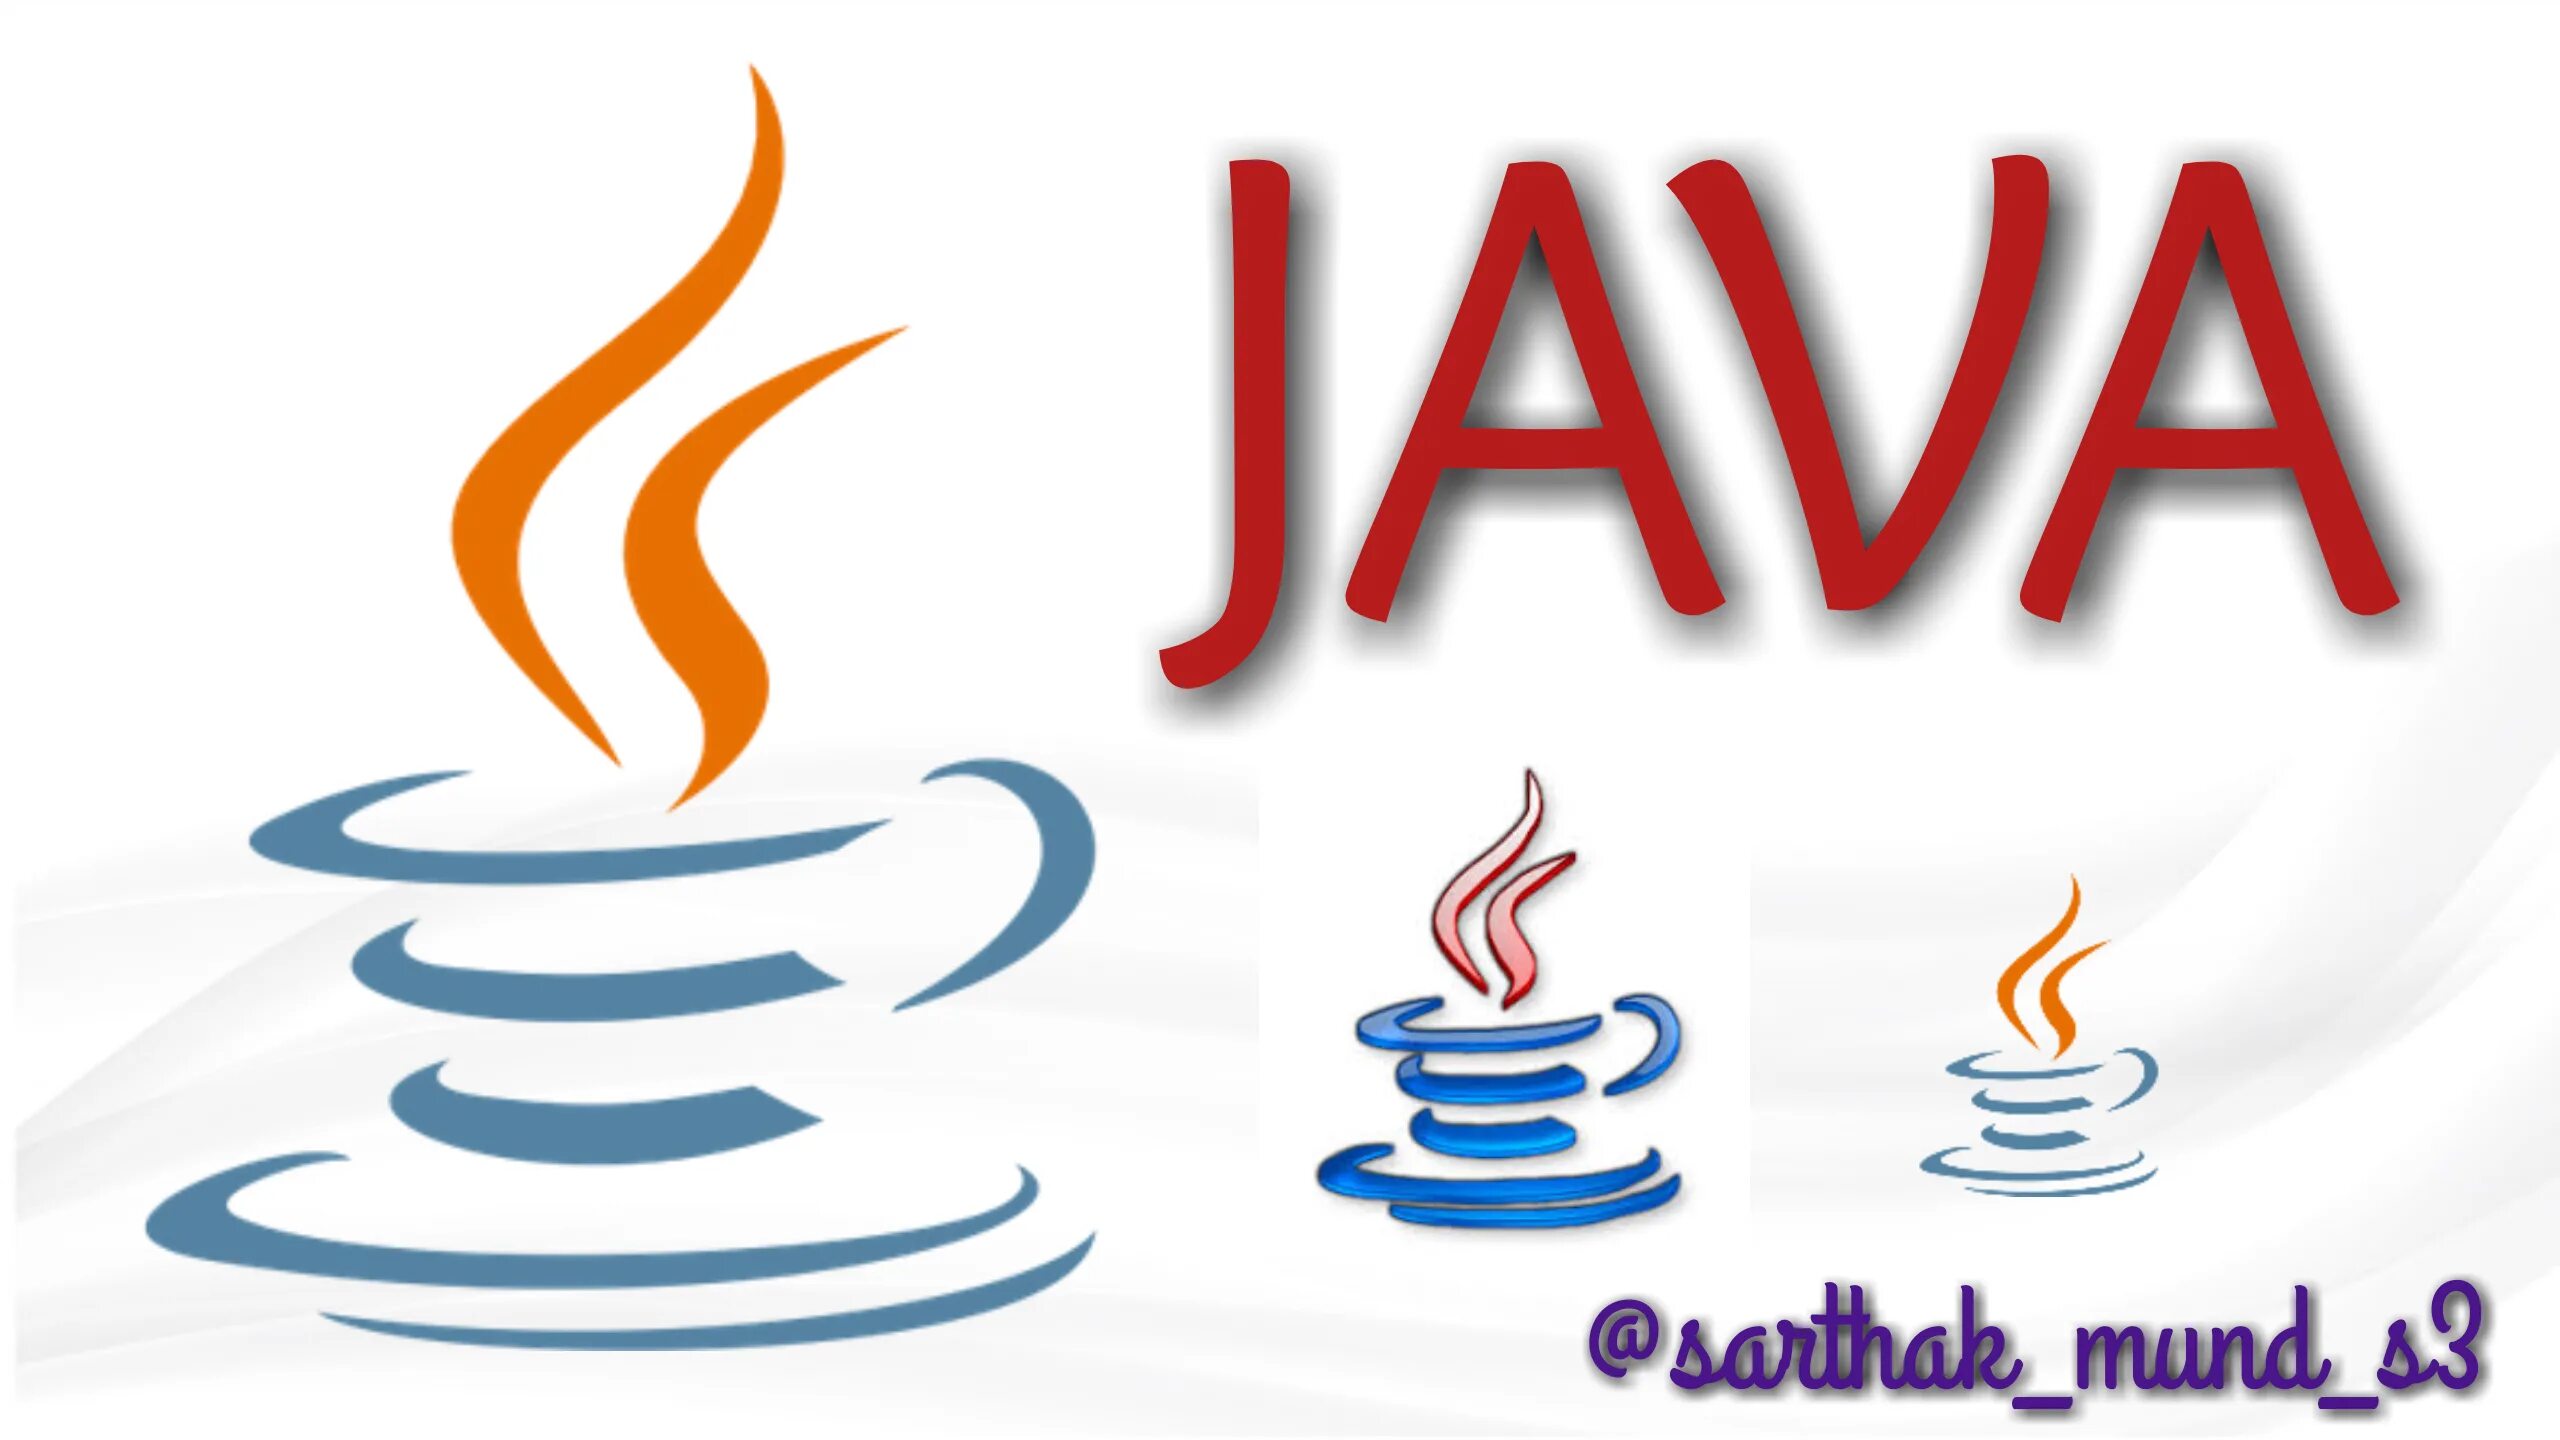 Java views. Java логотип. Значок java. Java первый логотип. Язык программирования java.